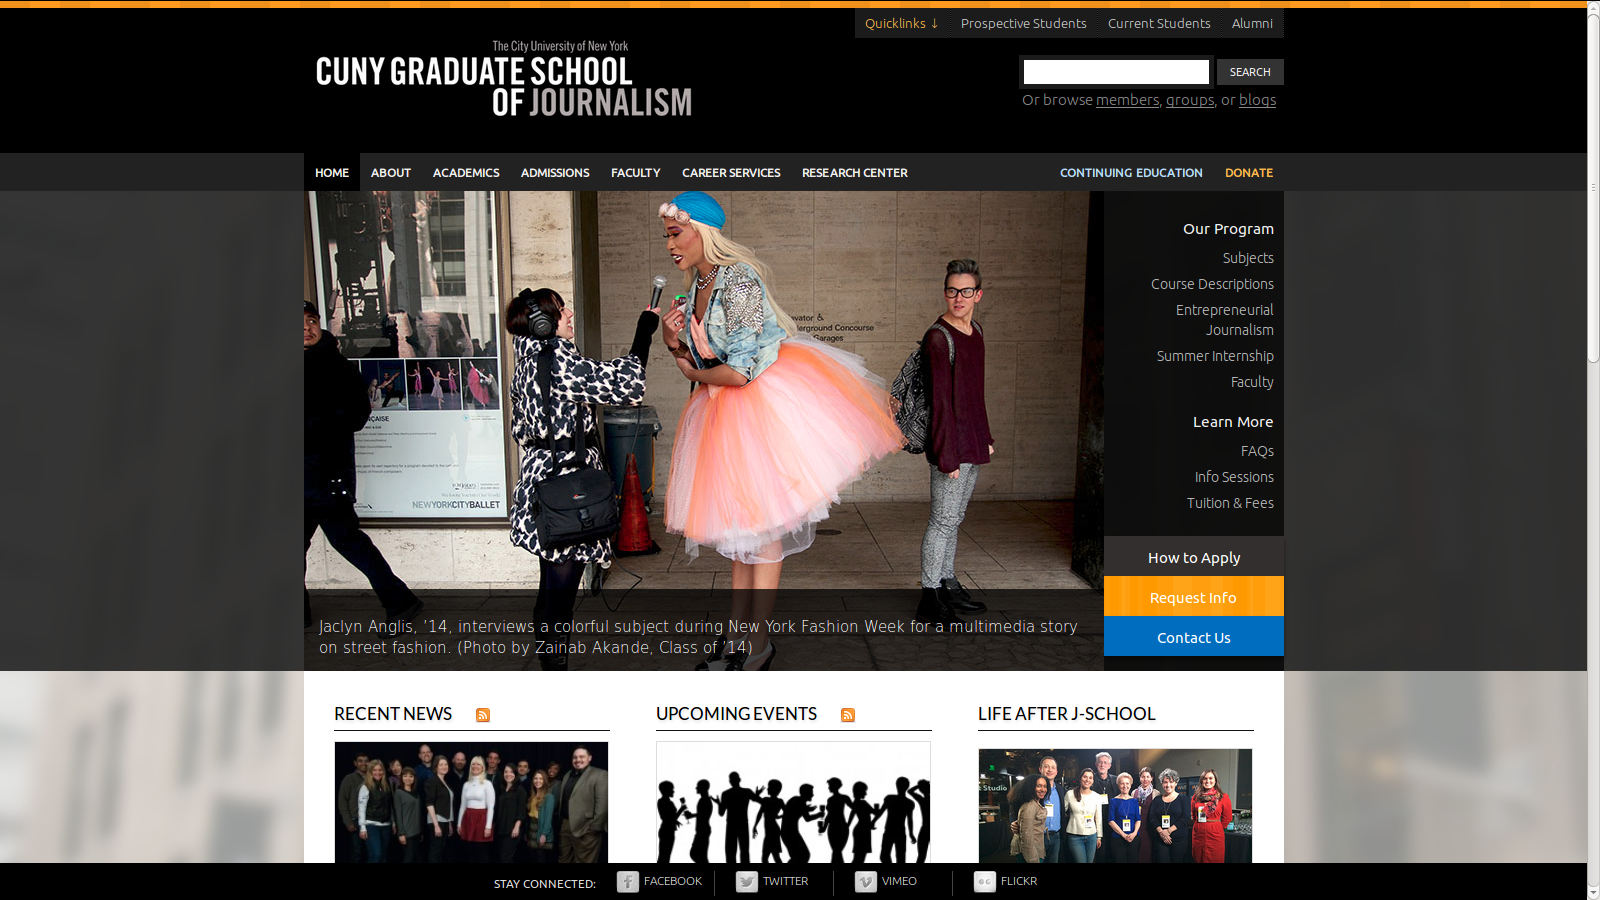 CUNY Graduate School of Journalism homepage